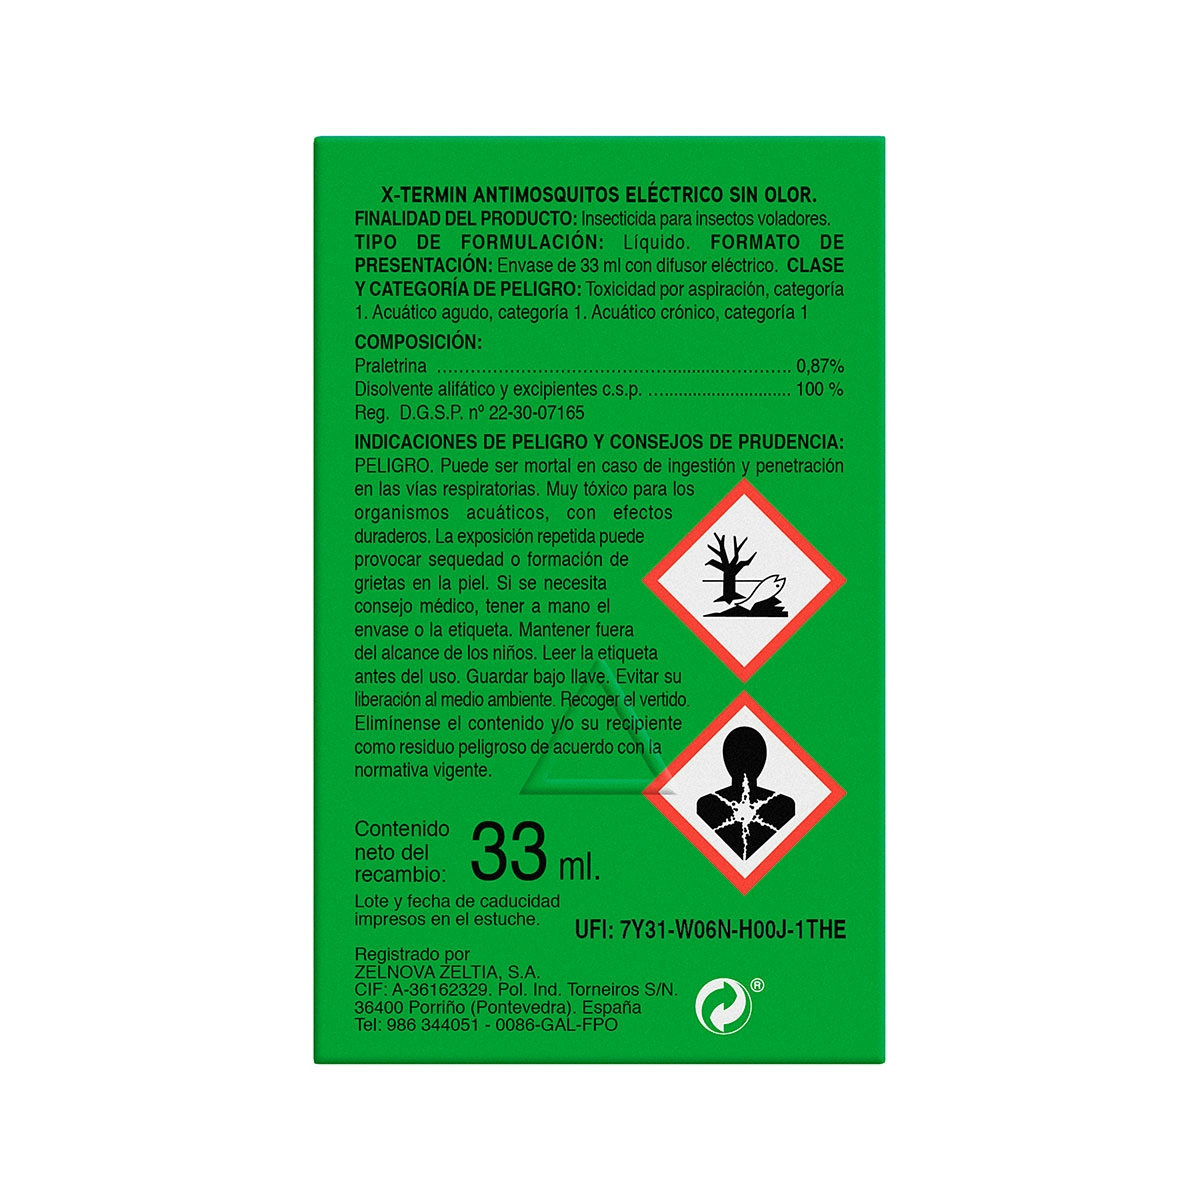 Insecticida eléctrico antimosquitos XTERMIN aparato+recambio 1 ud